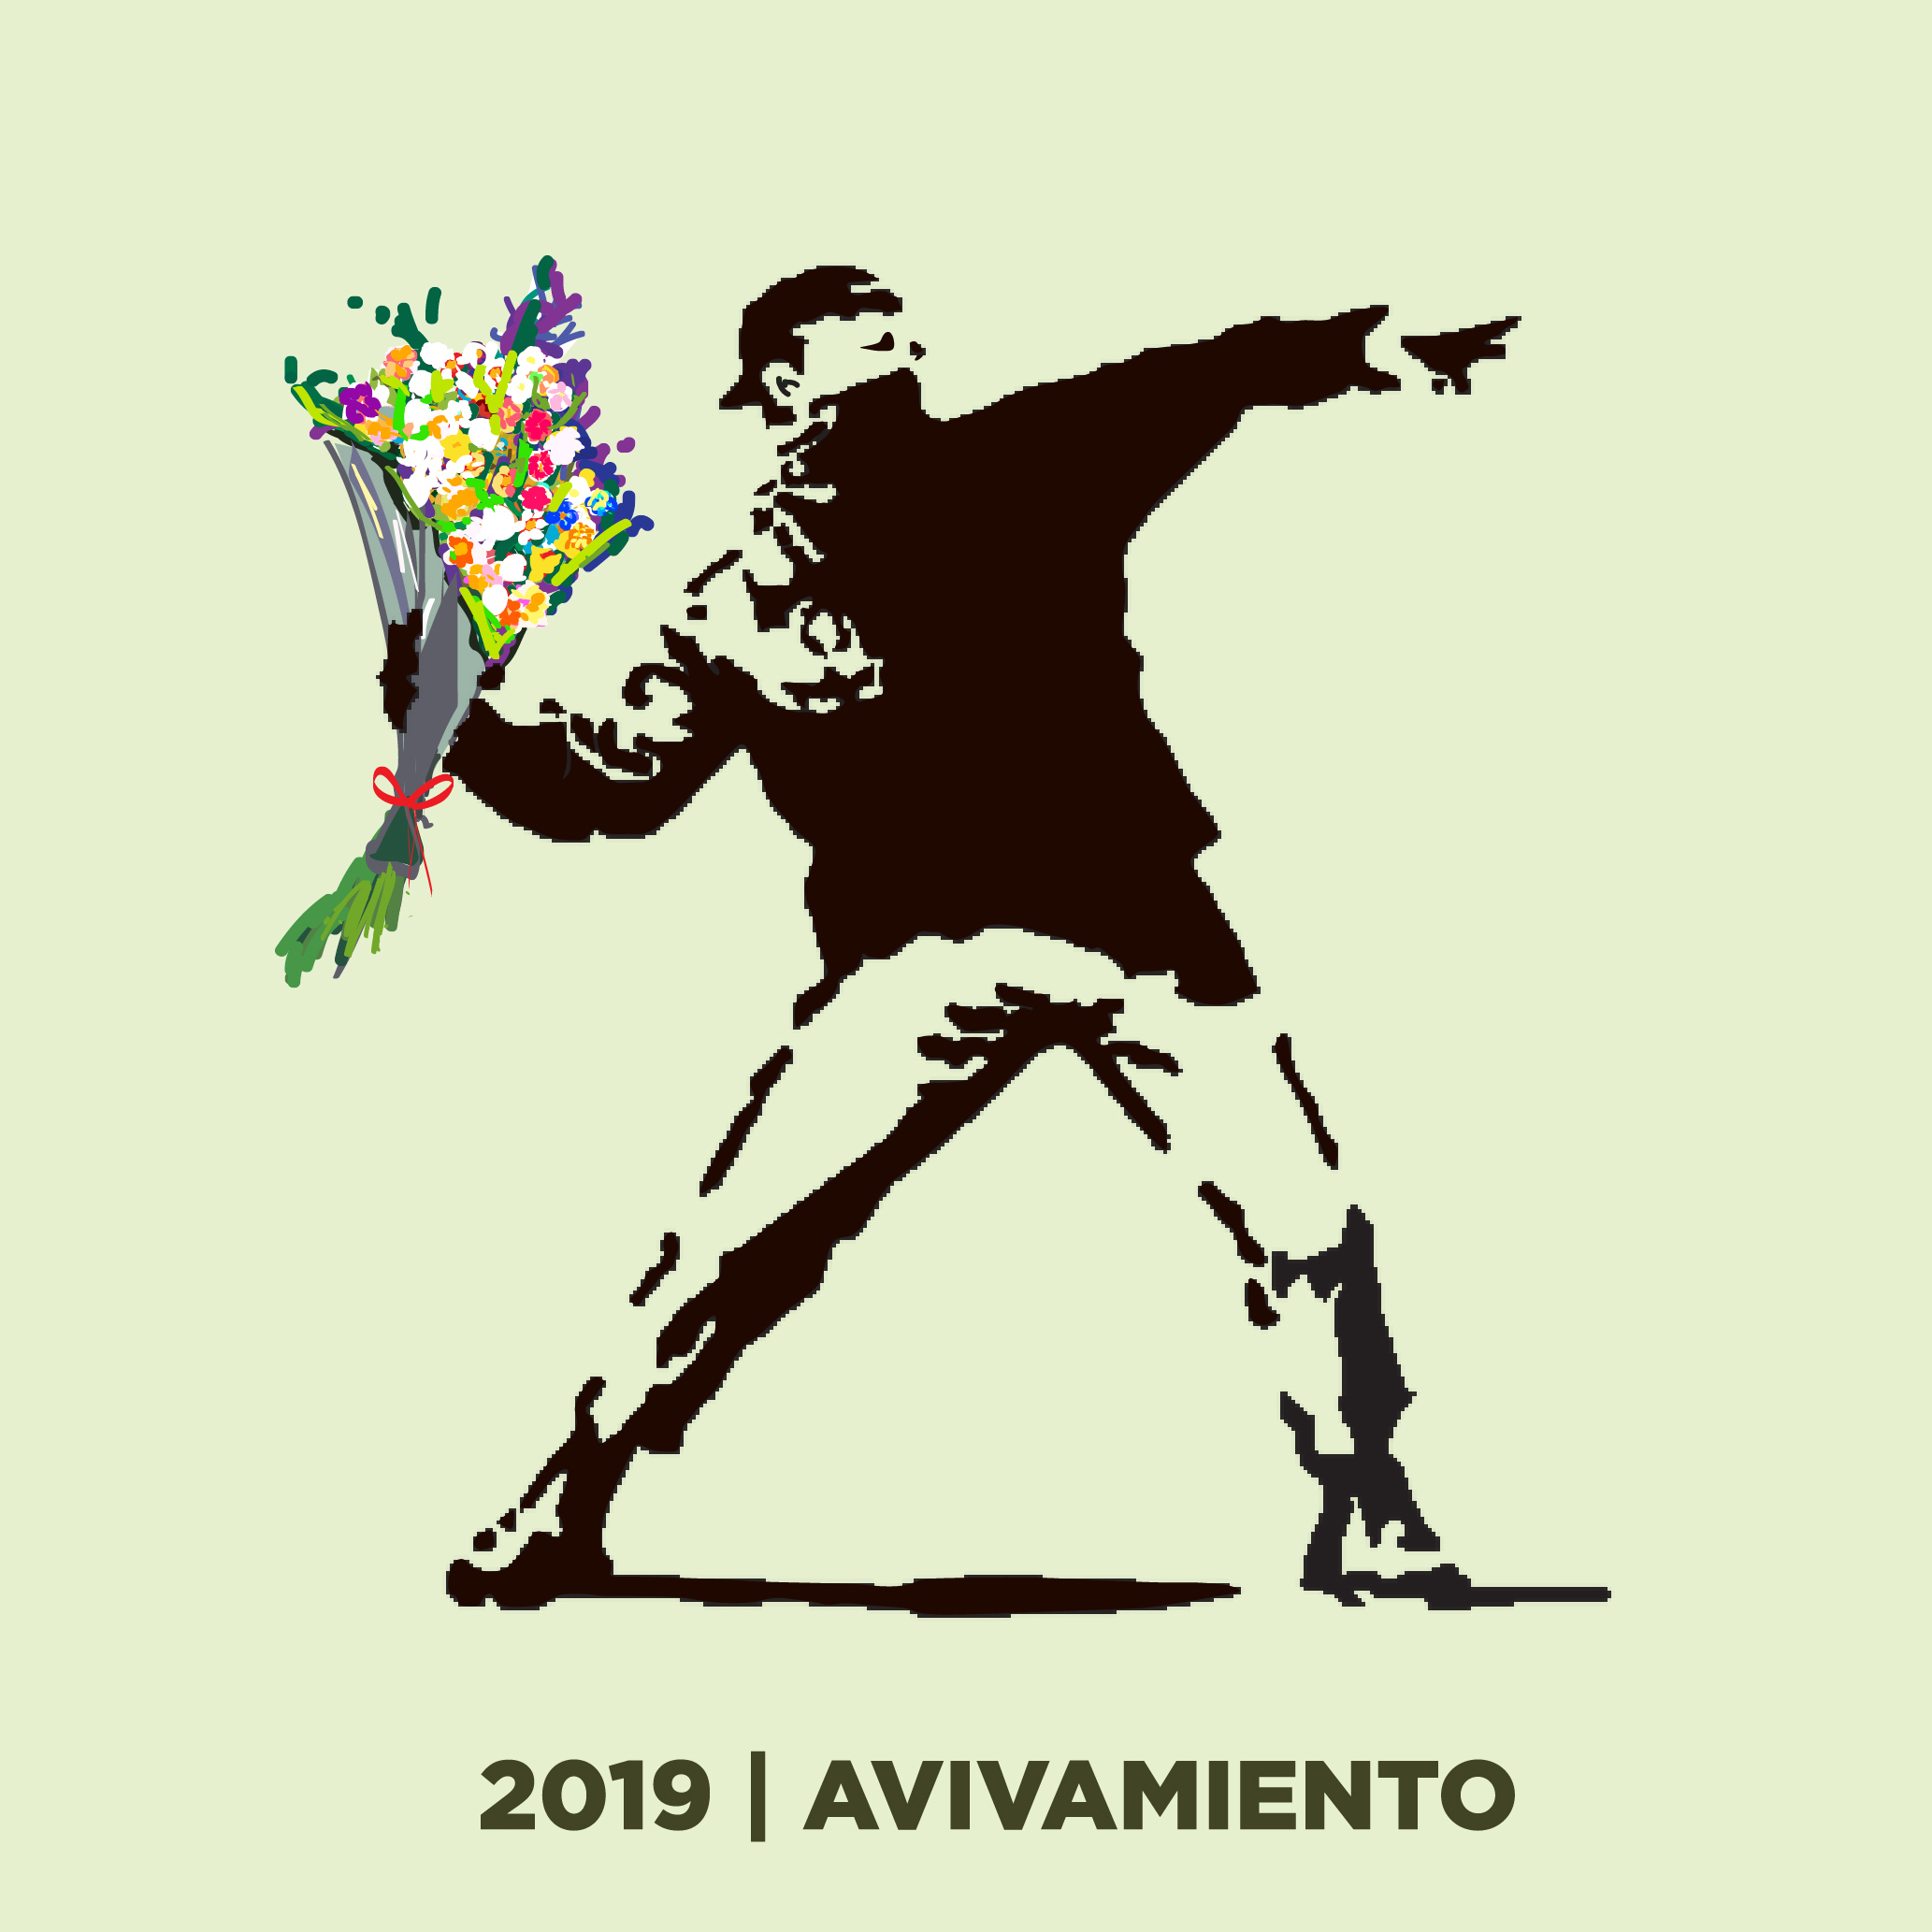 2019 | AÑO DE AVIVAMIENTO